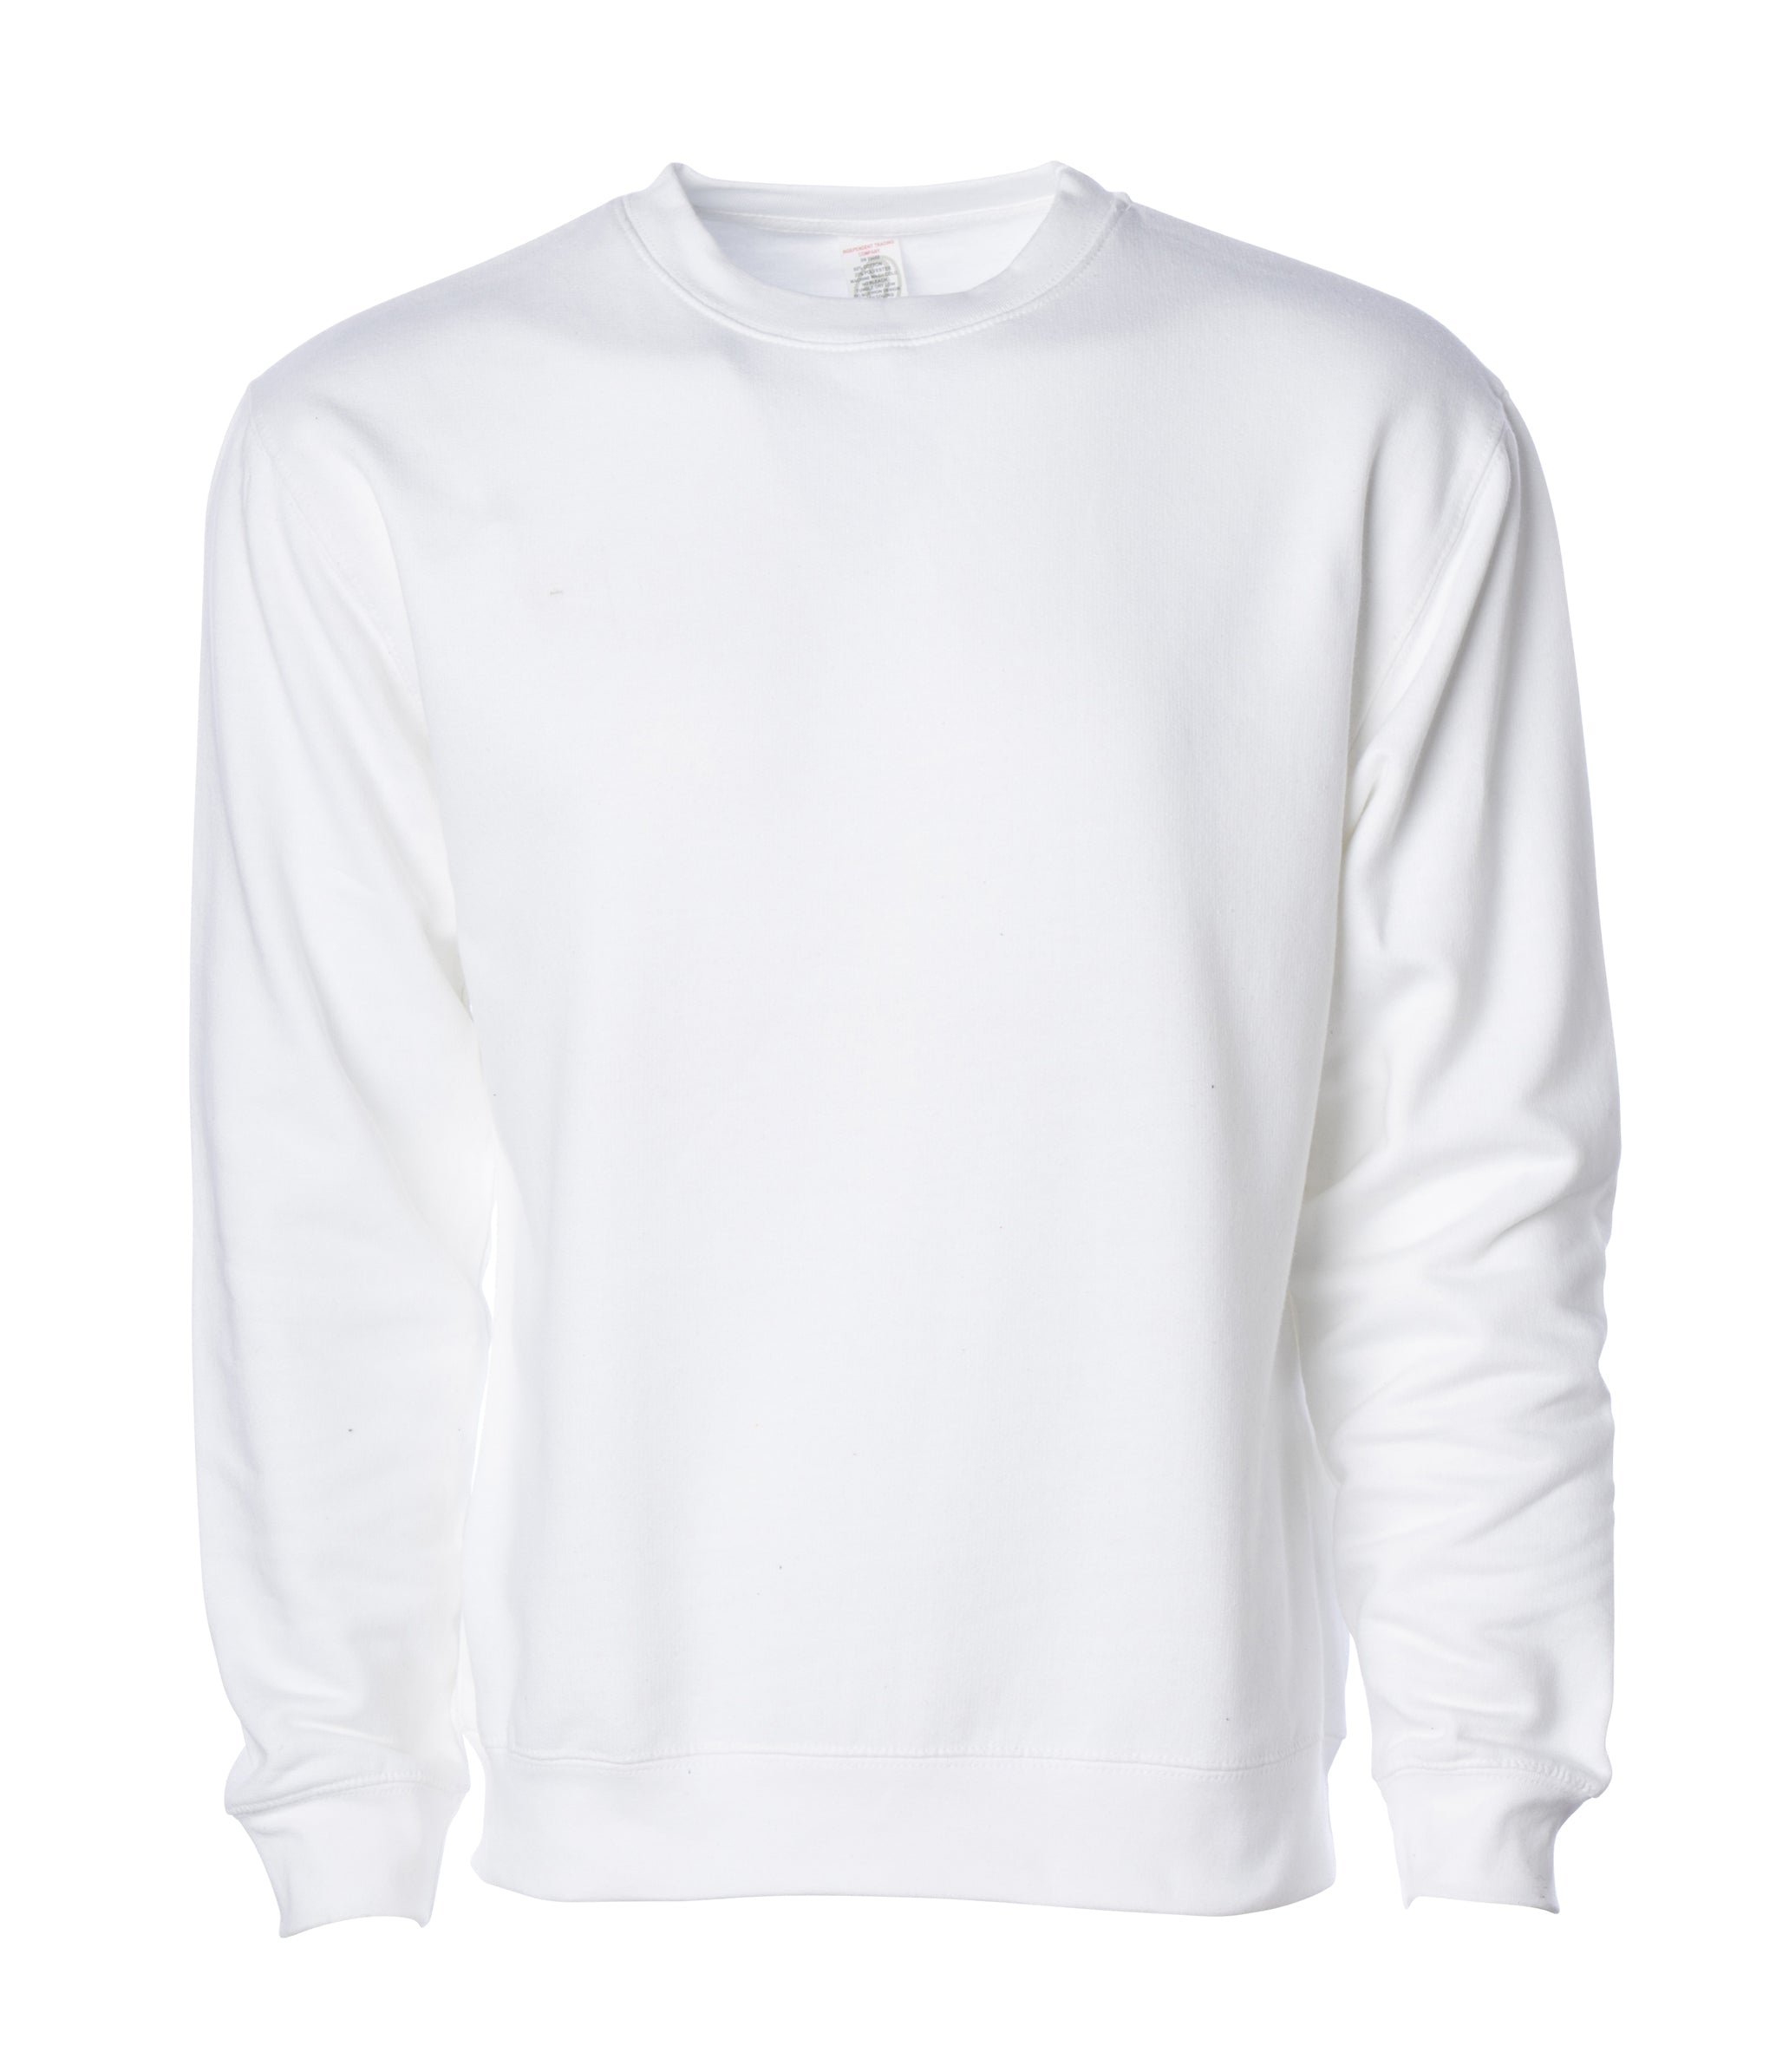 white round neck sweatshirt